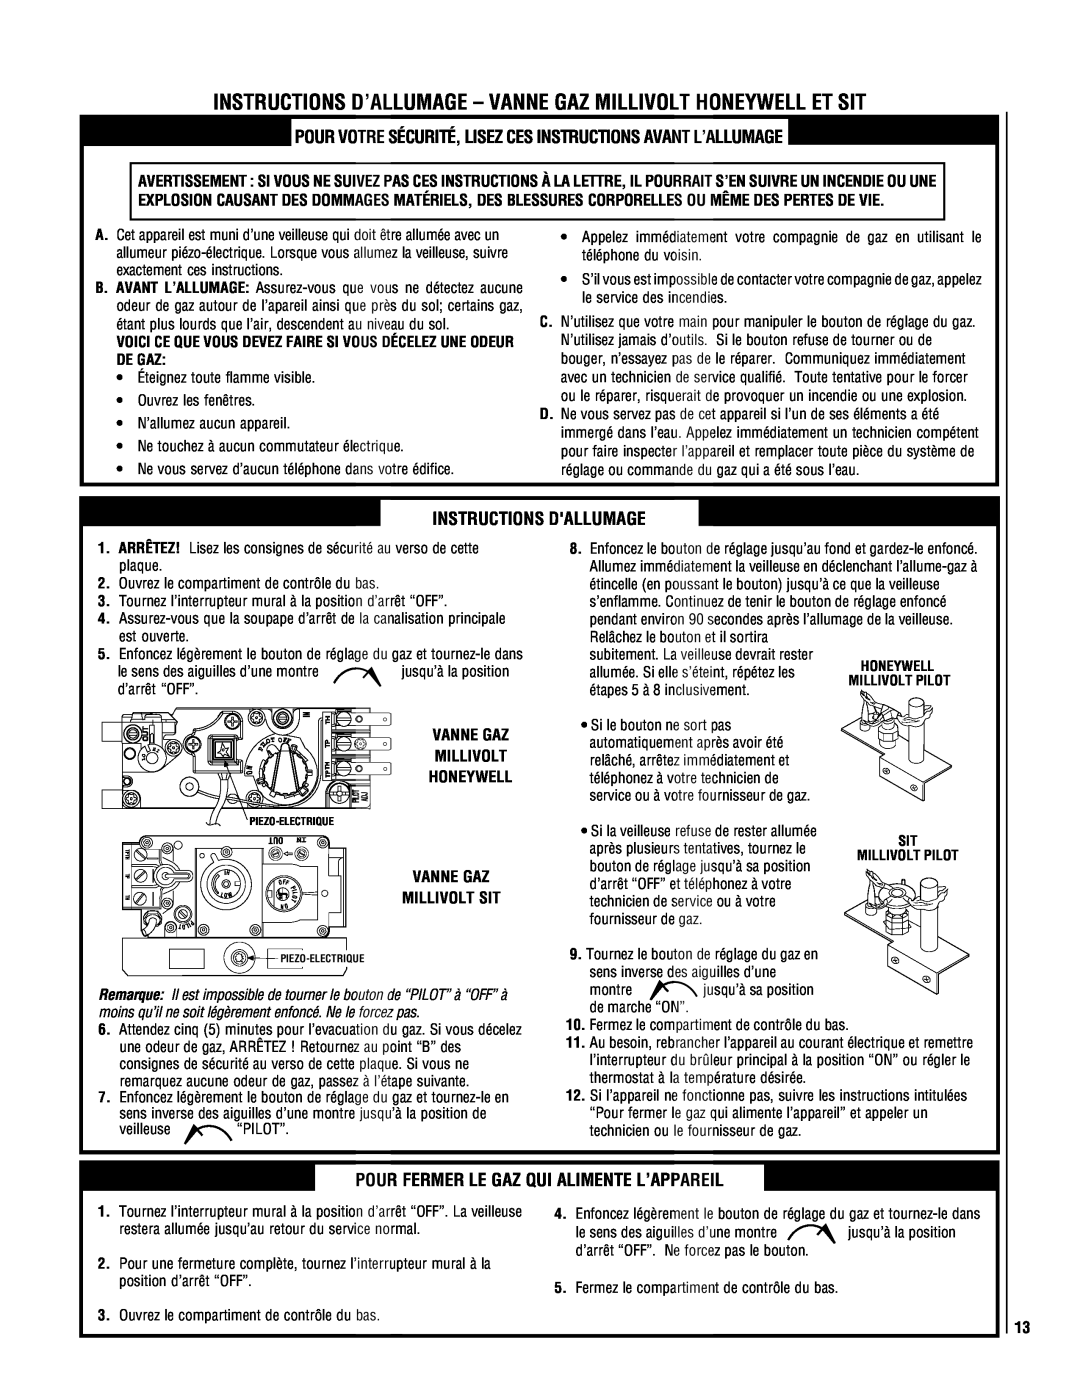 Superior DR500 manual Instructions Dallumage, Pour Fermer Le Gaz Qui Alimente L’Appareil 